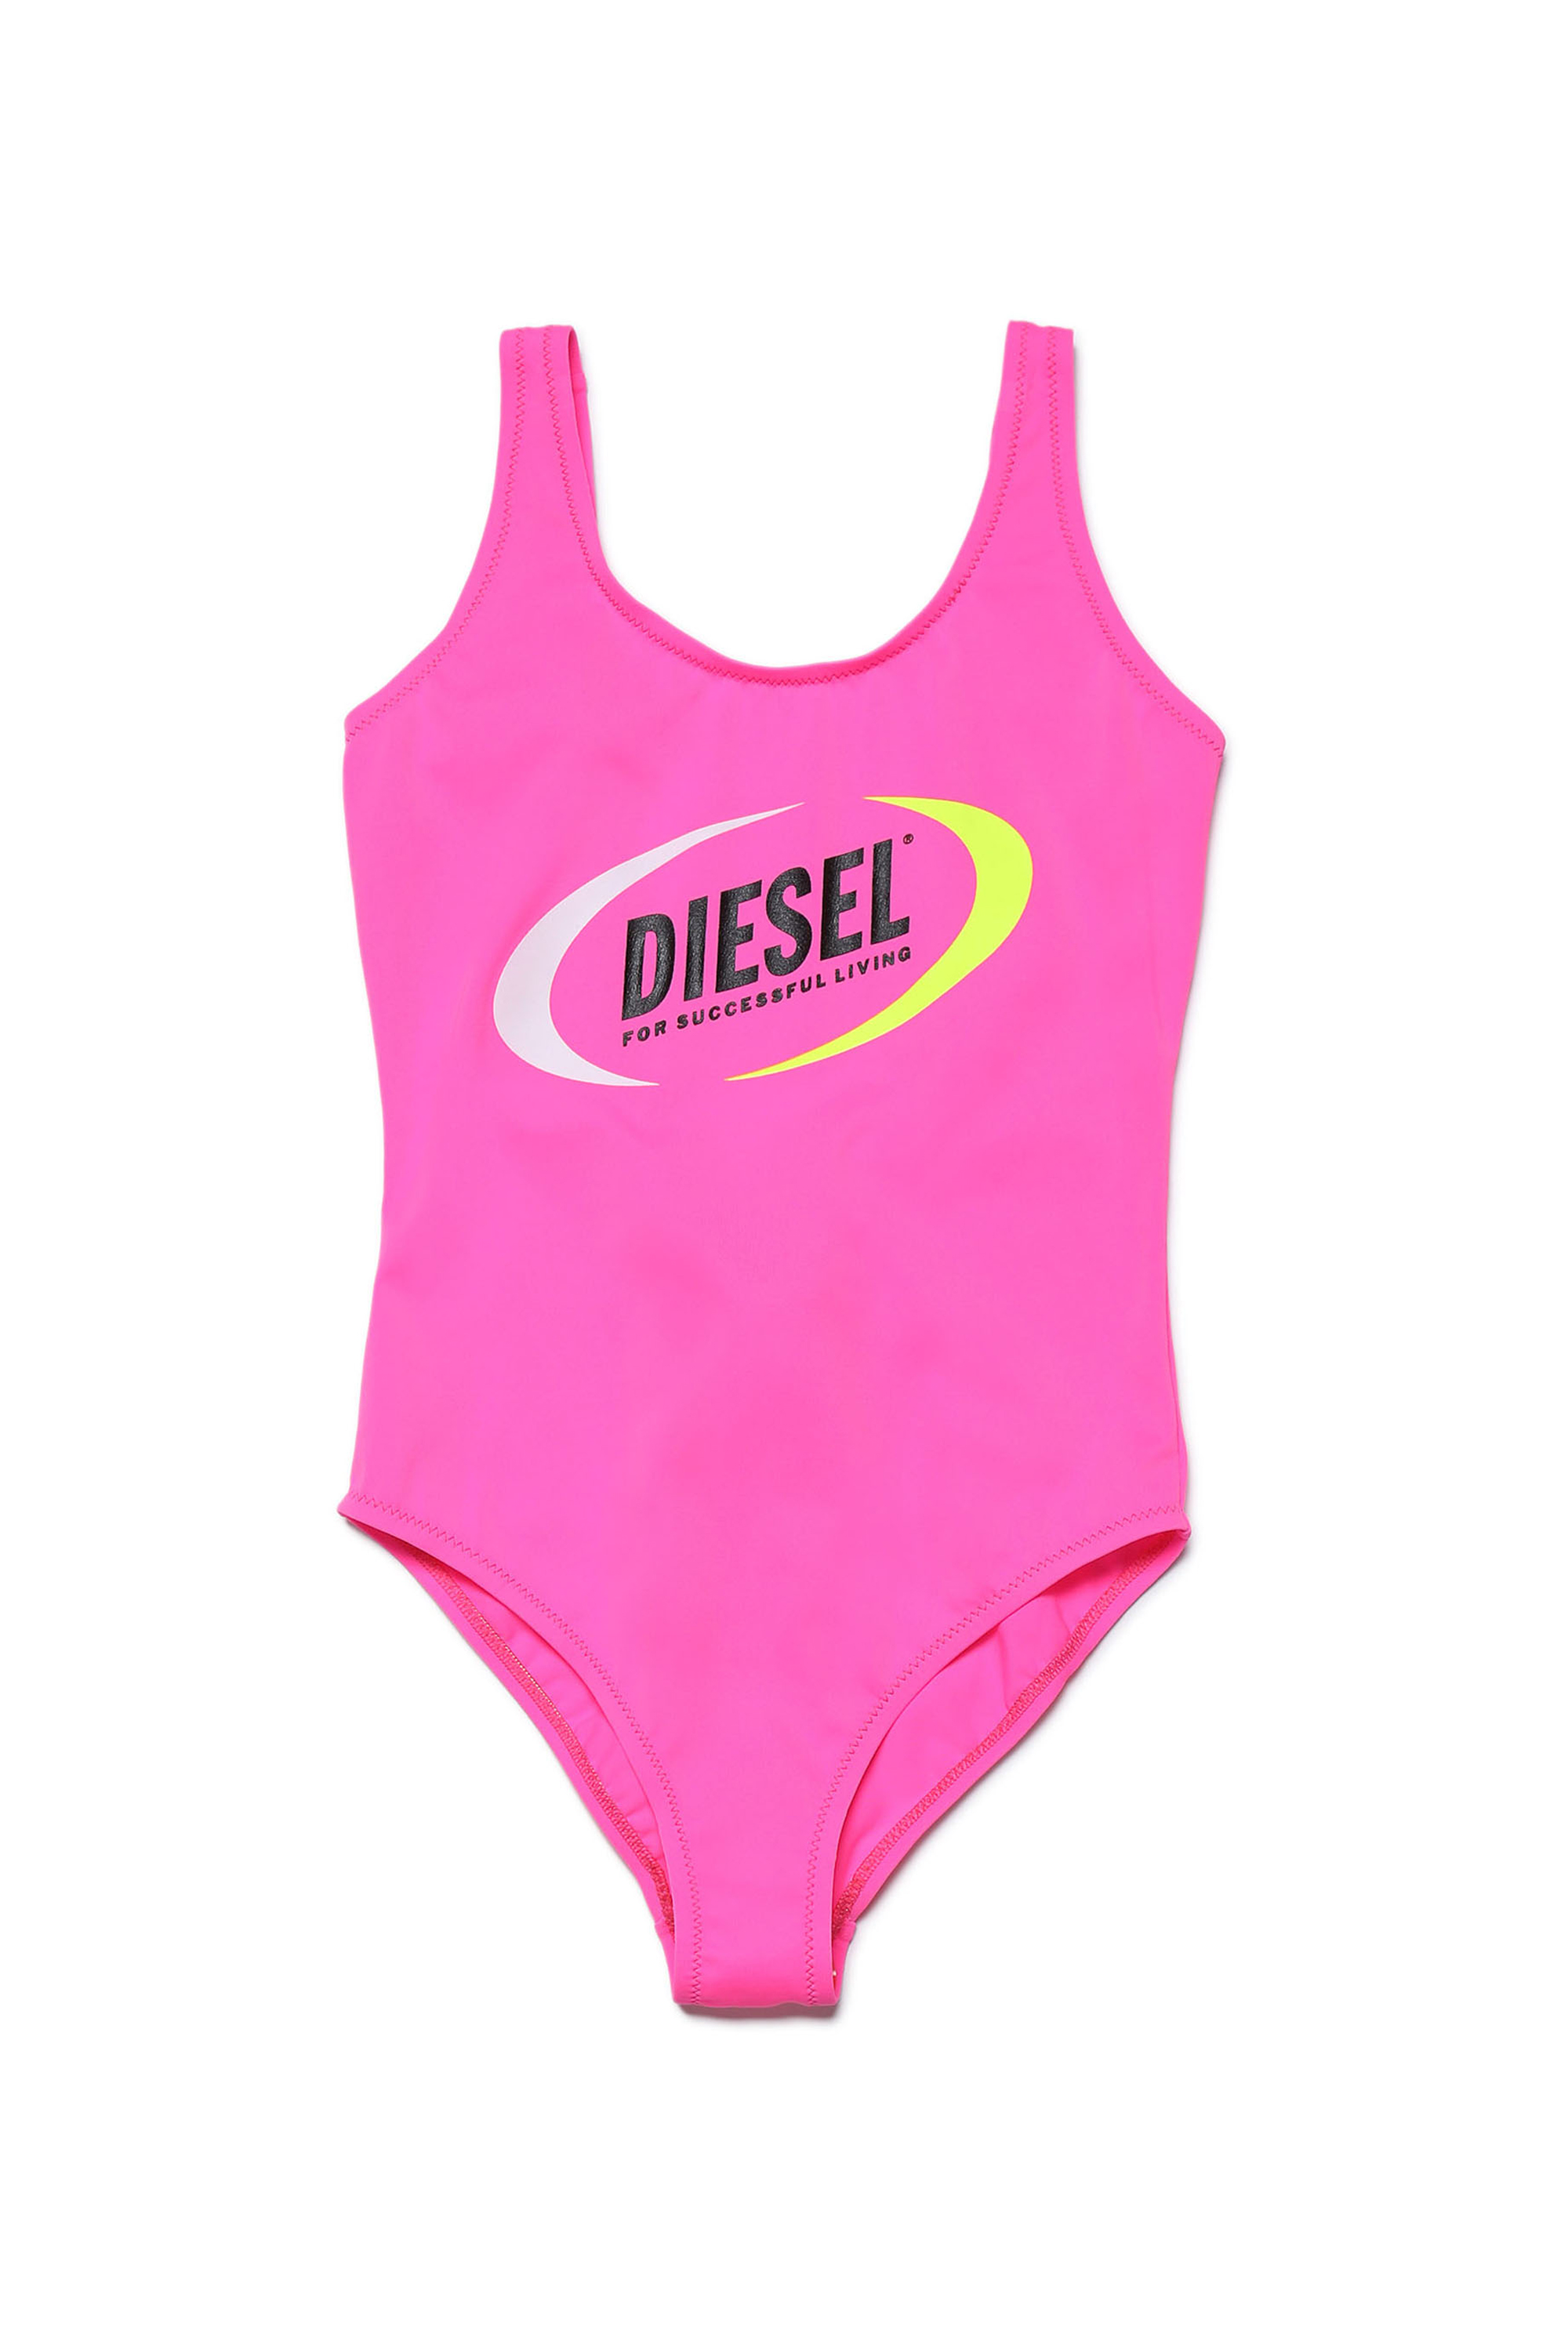 Diesel - MLIAFY, Pink - Image 1